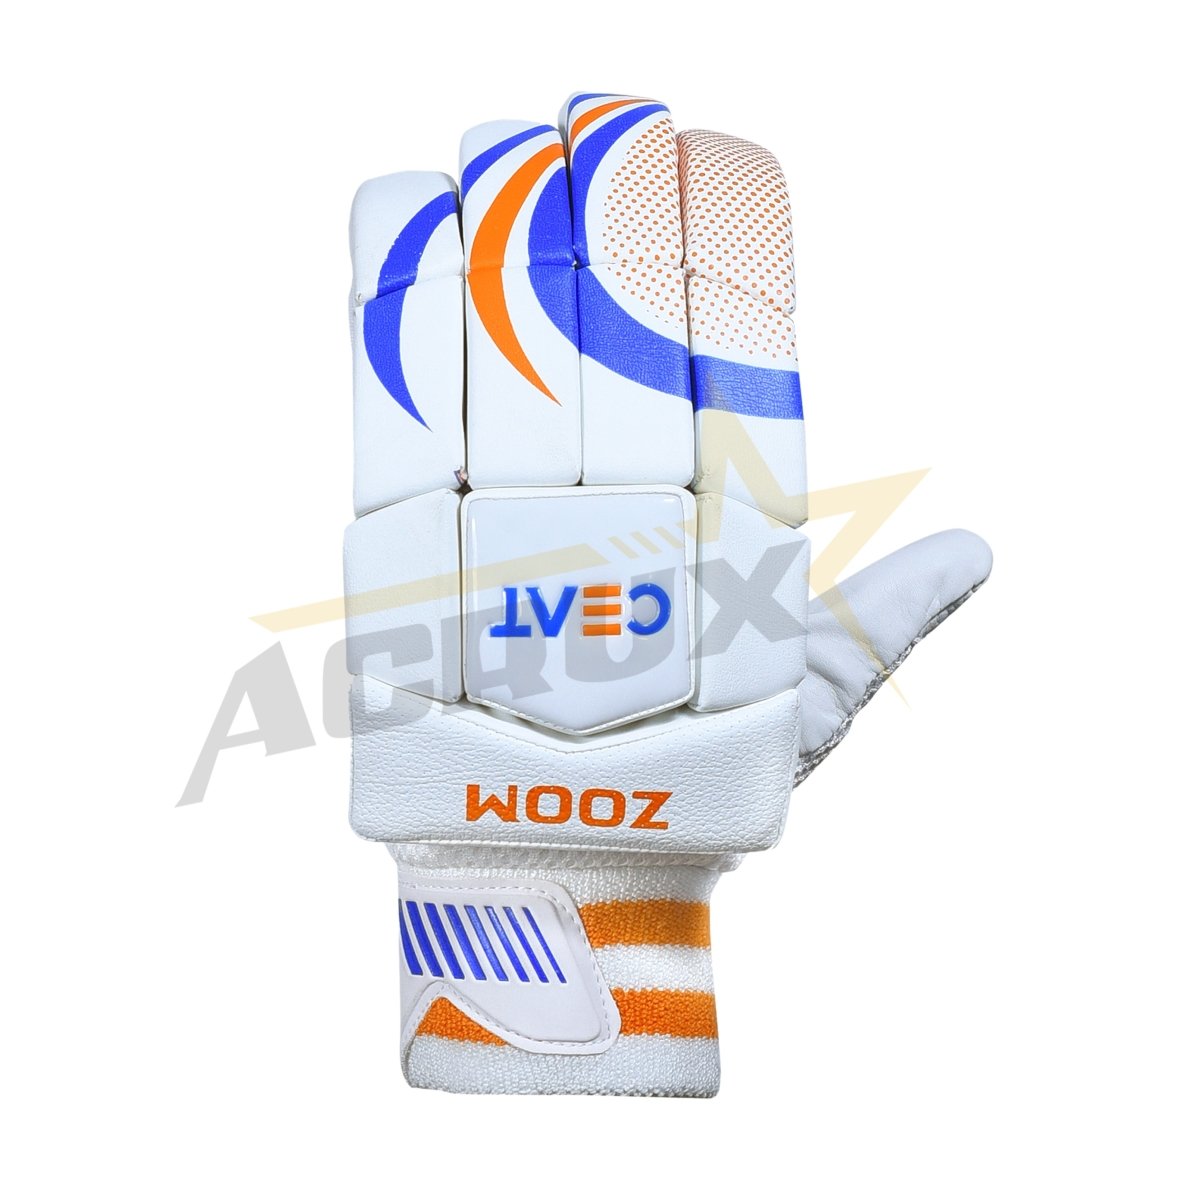 CEAT Zoom Cricket Batting Gloves.